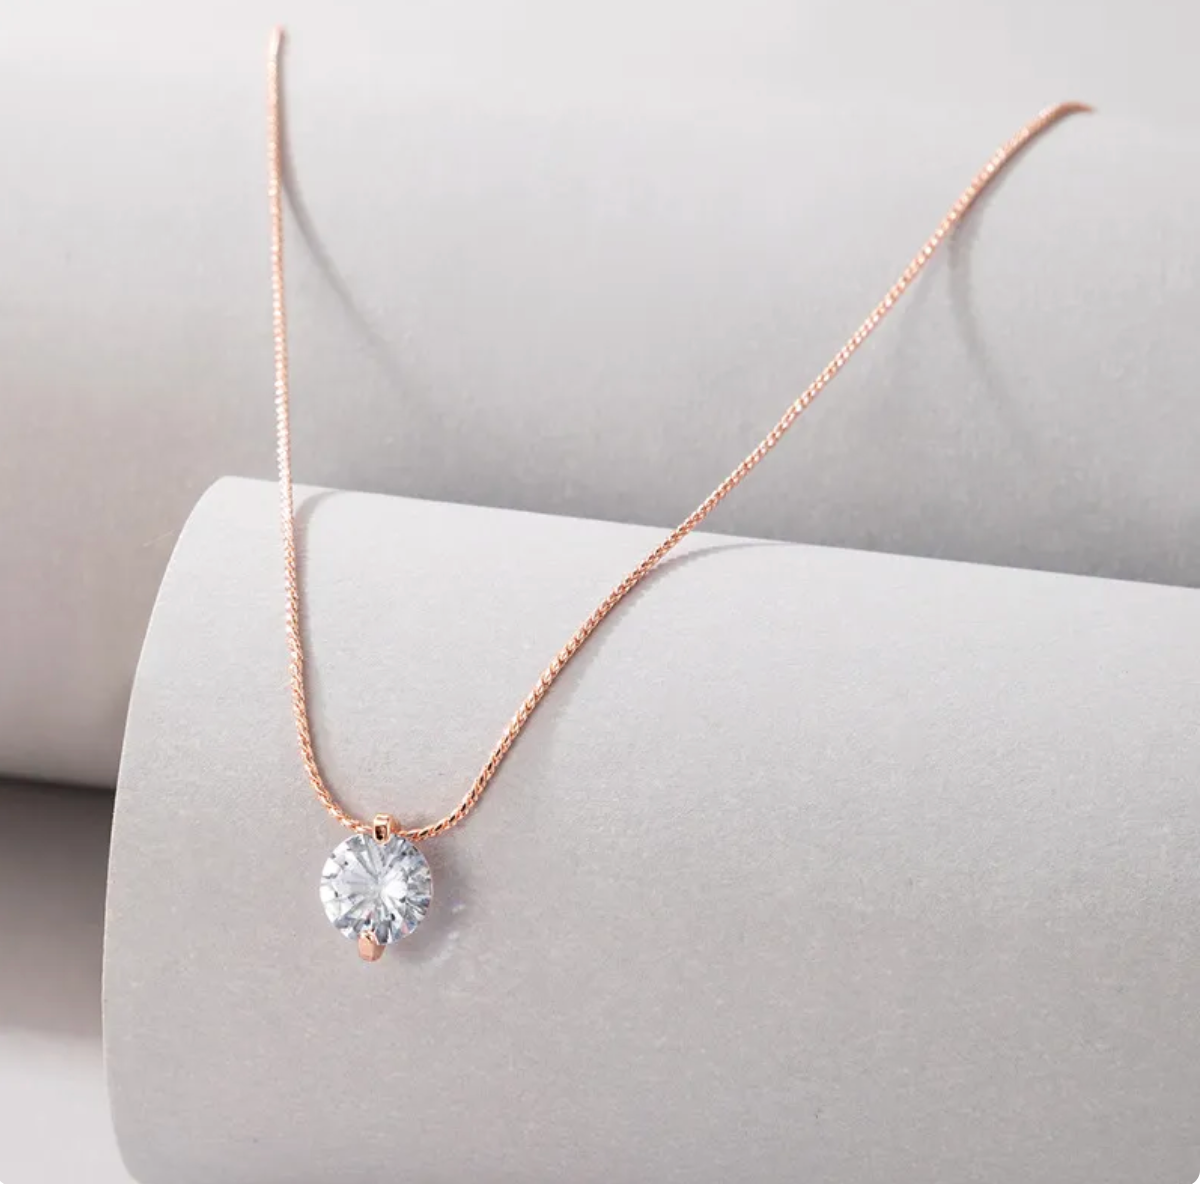 Simple diamond necklace